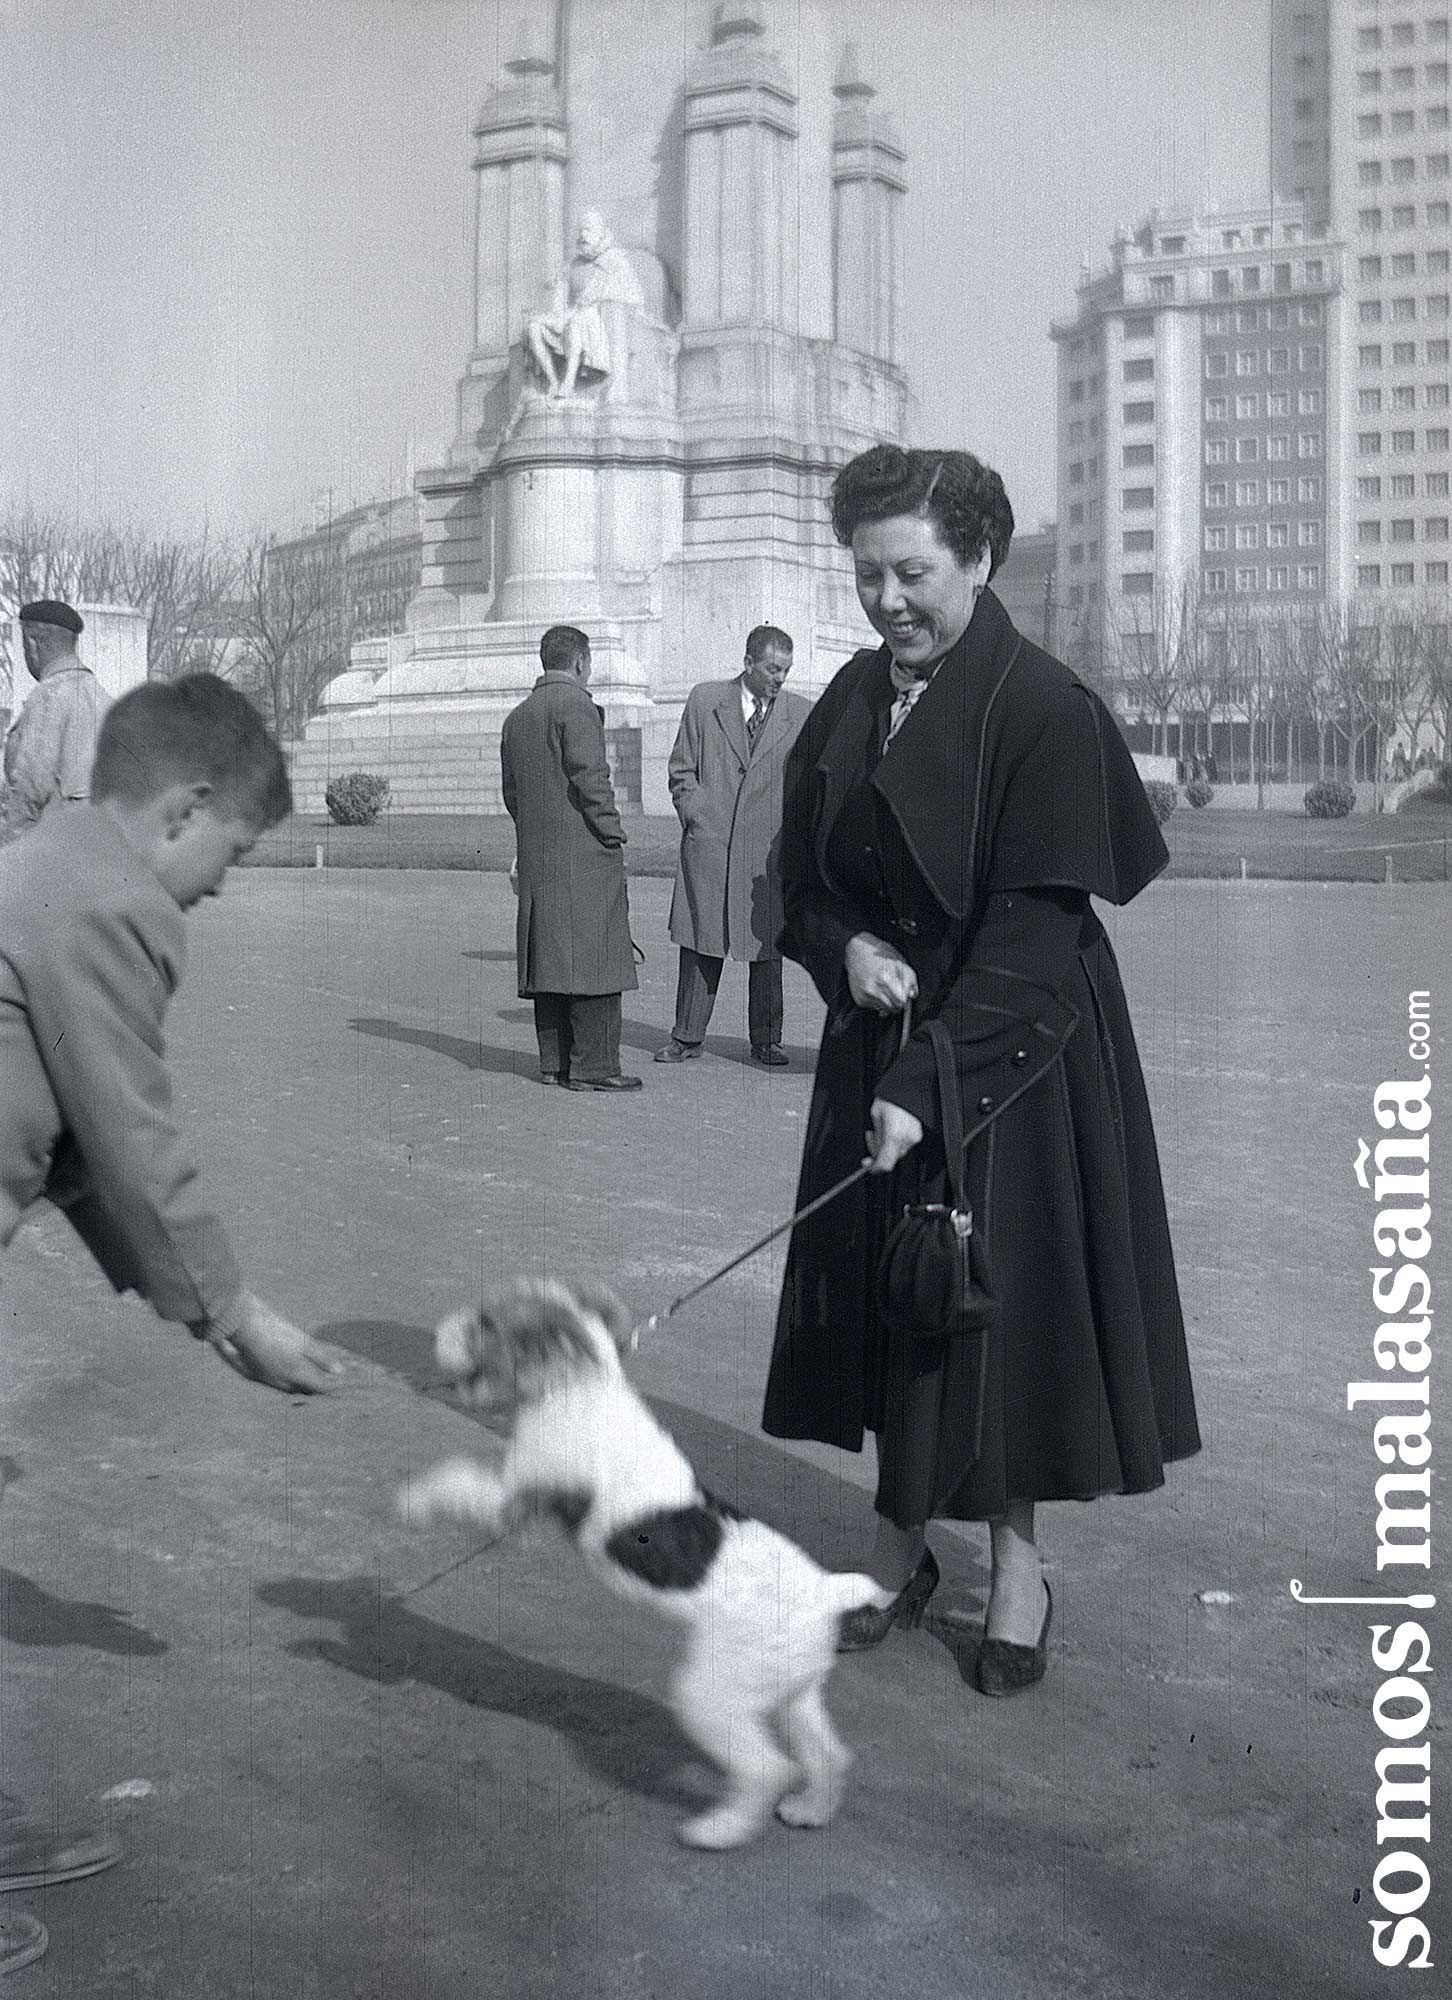 Un niño saluda a un perro en una antigua Plaza de España | TIENES UN TESORO